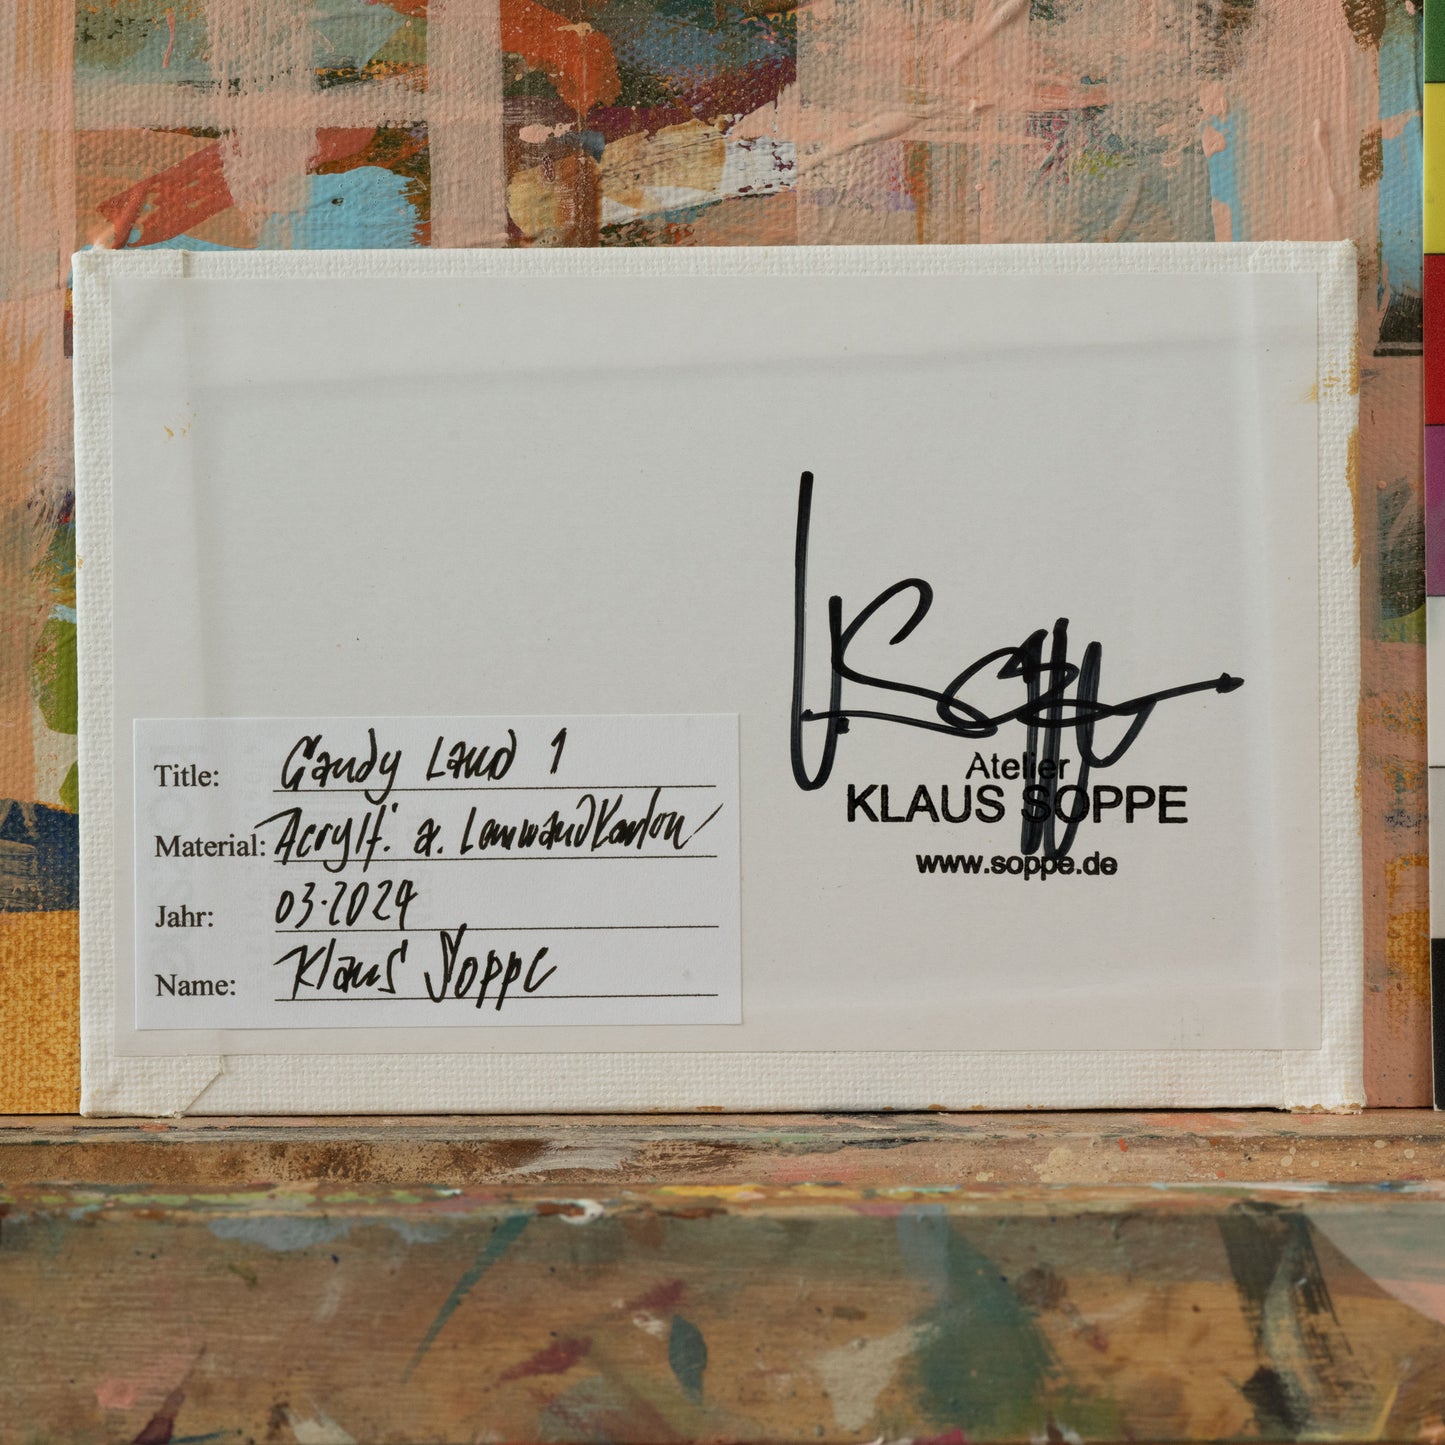 "Candy Land 1", Unikat, Malerei, handgemaltes Einzelstück, 17,3 x 12,3 cm, mit Bilderrahmen